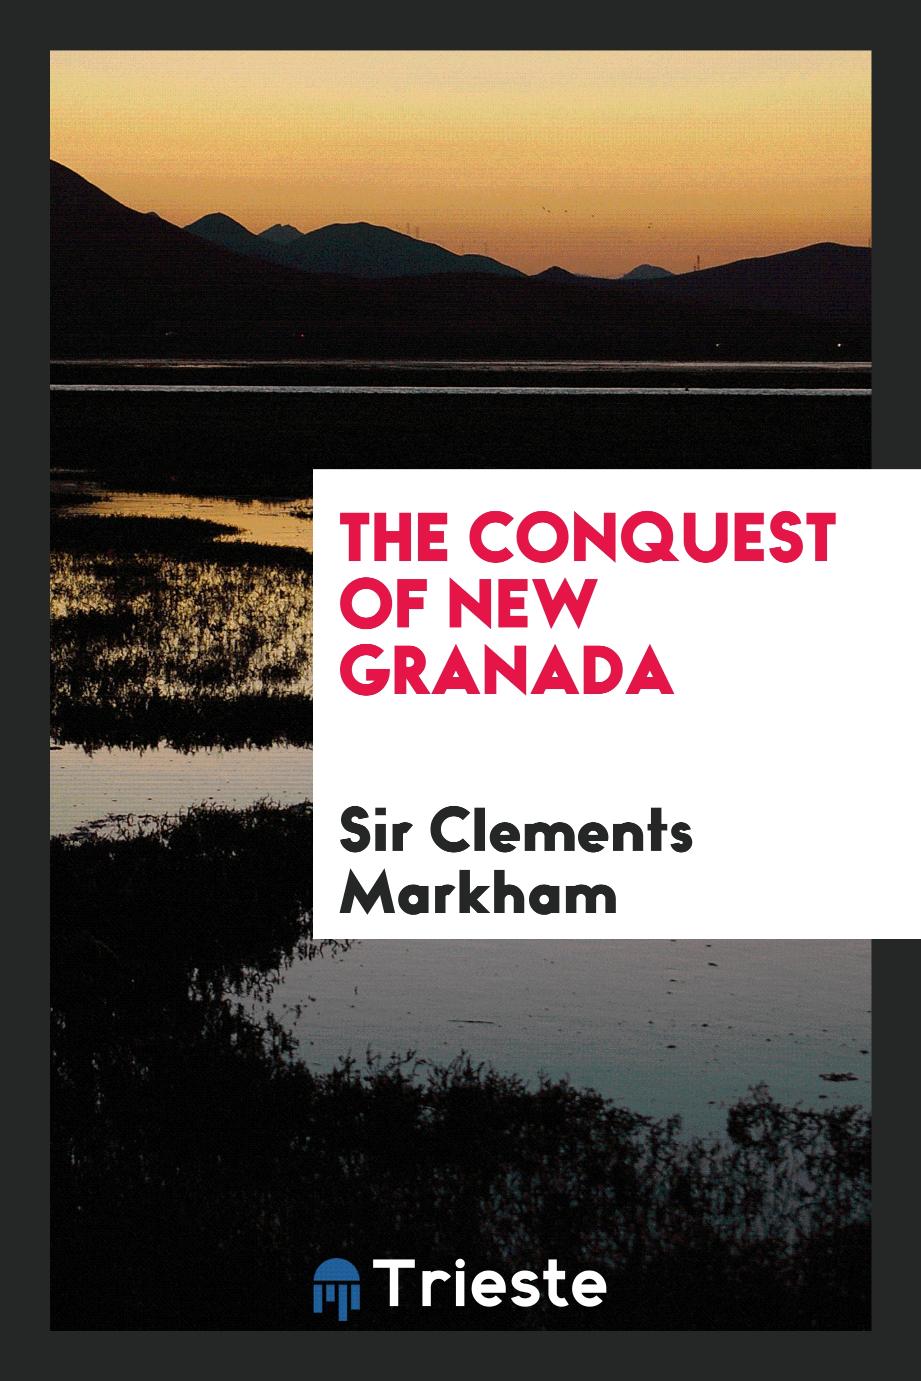 The conquest of New Granada